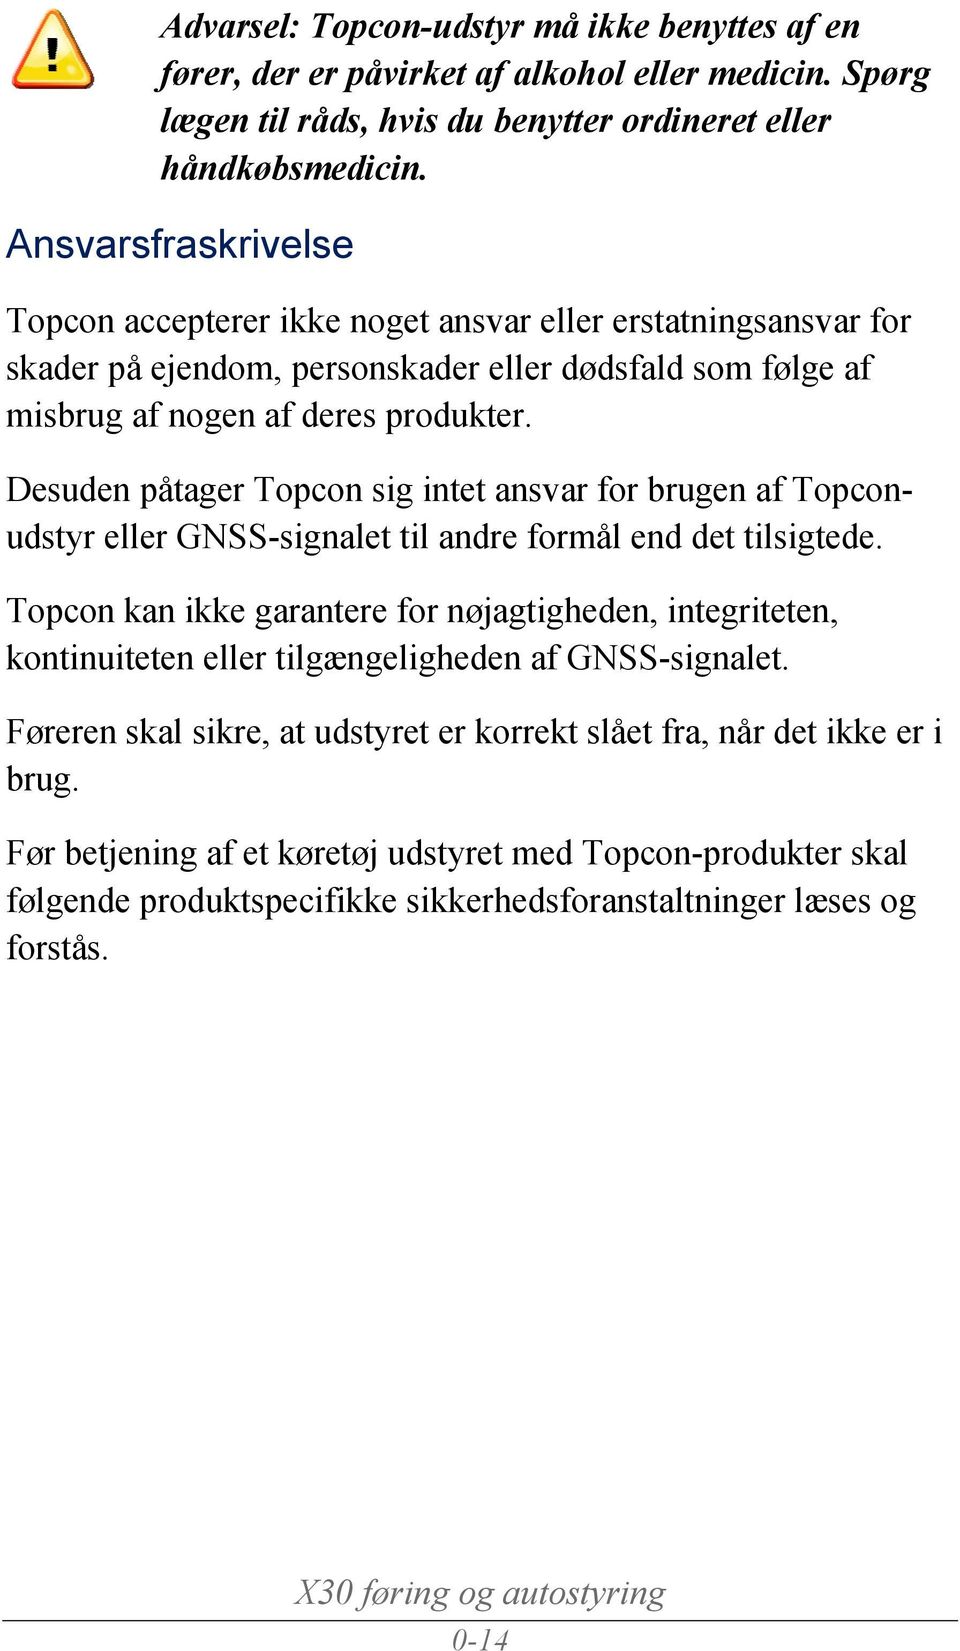 Desuden påtager Topcon sig intet ansvar for brugen af Topconudstyr eller GNSS-signalet til andre formål end det tilsigtede.